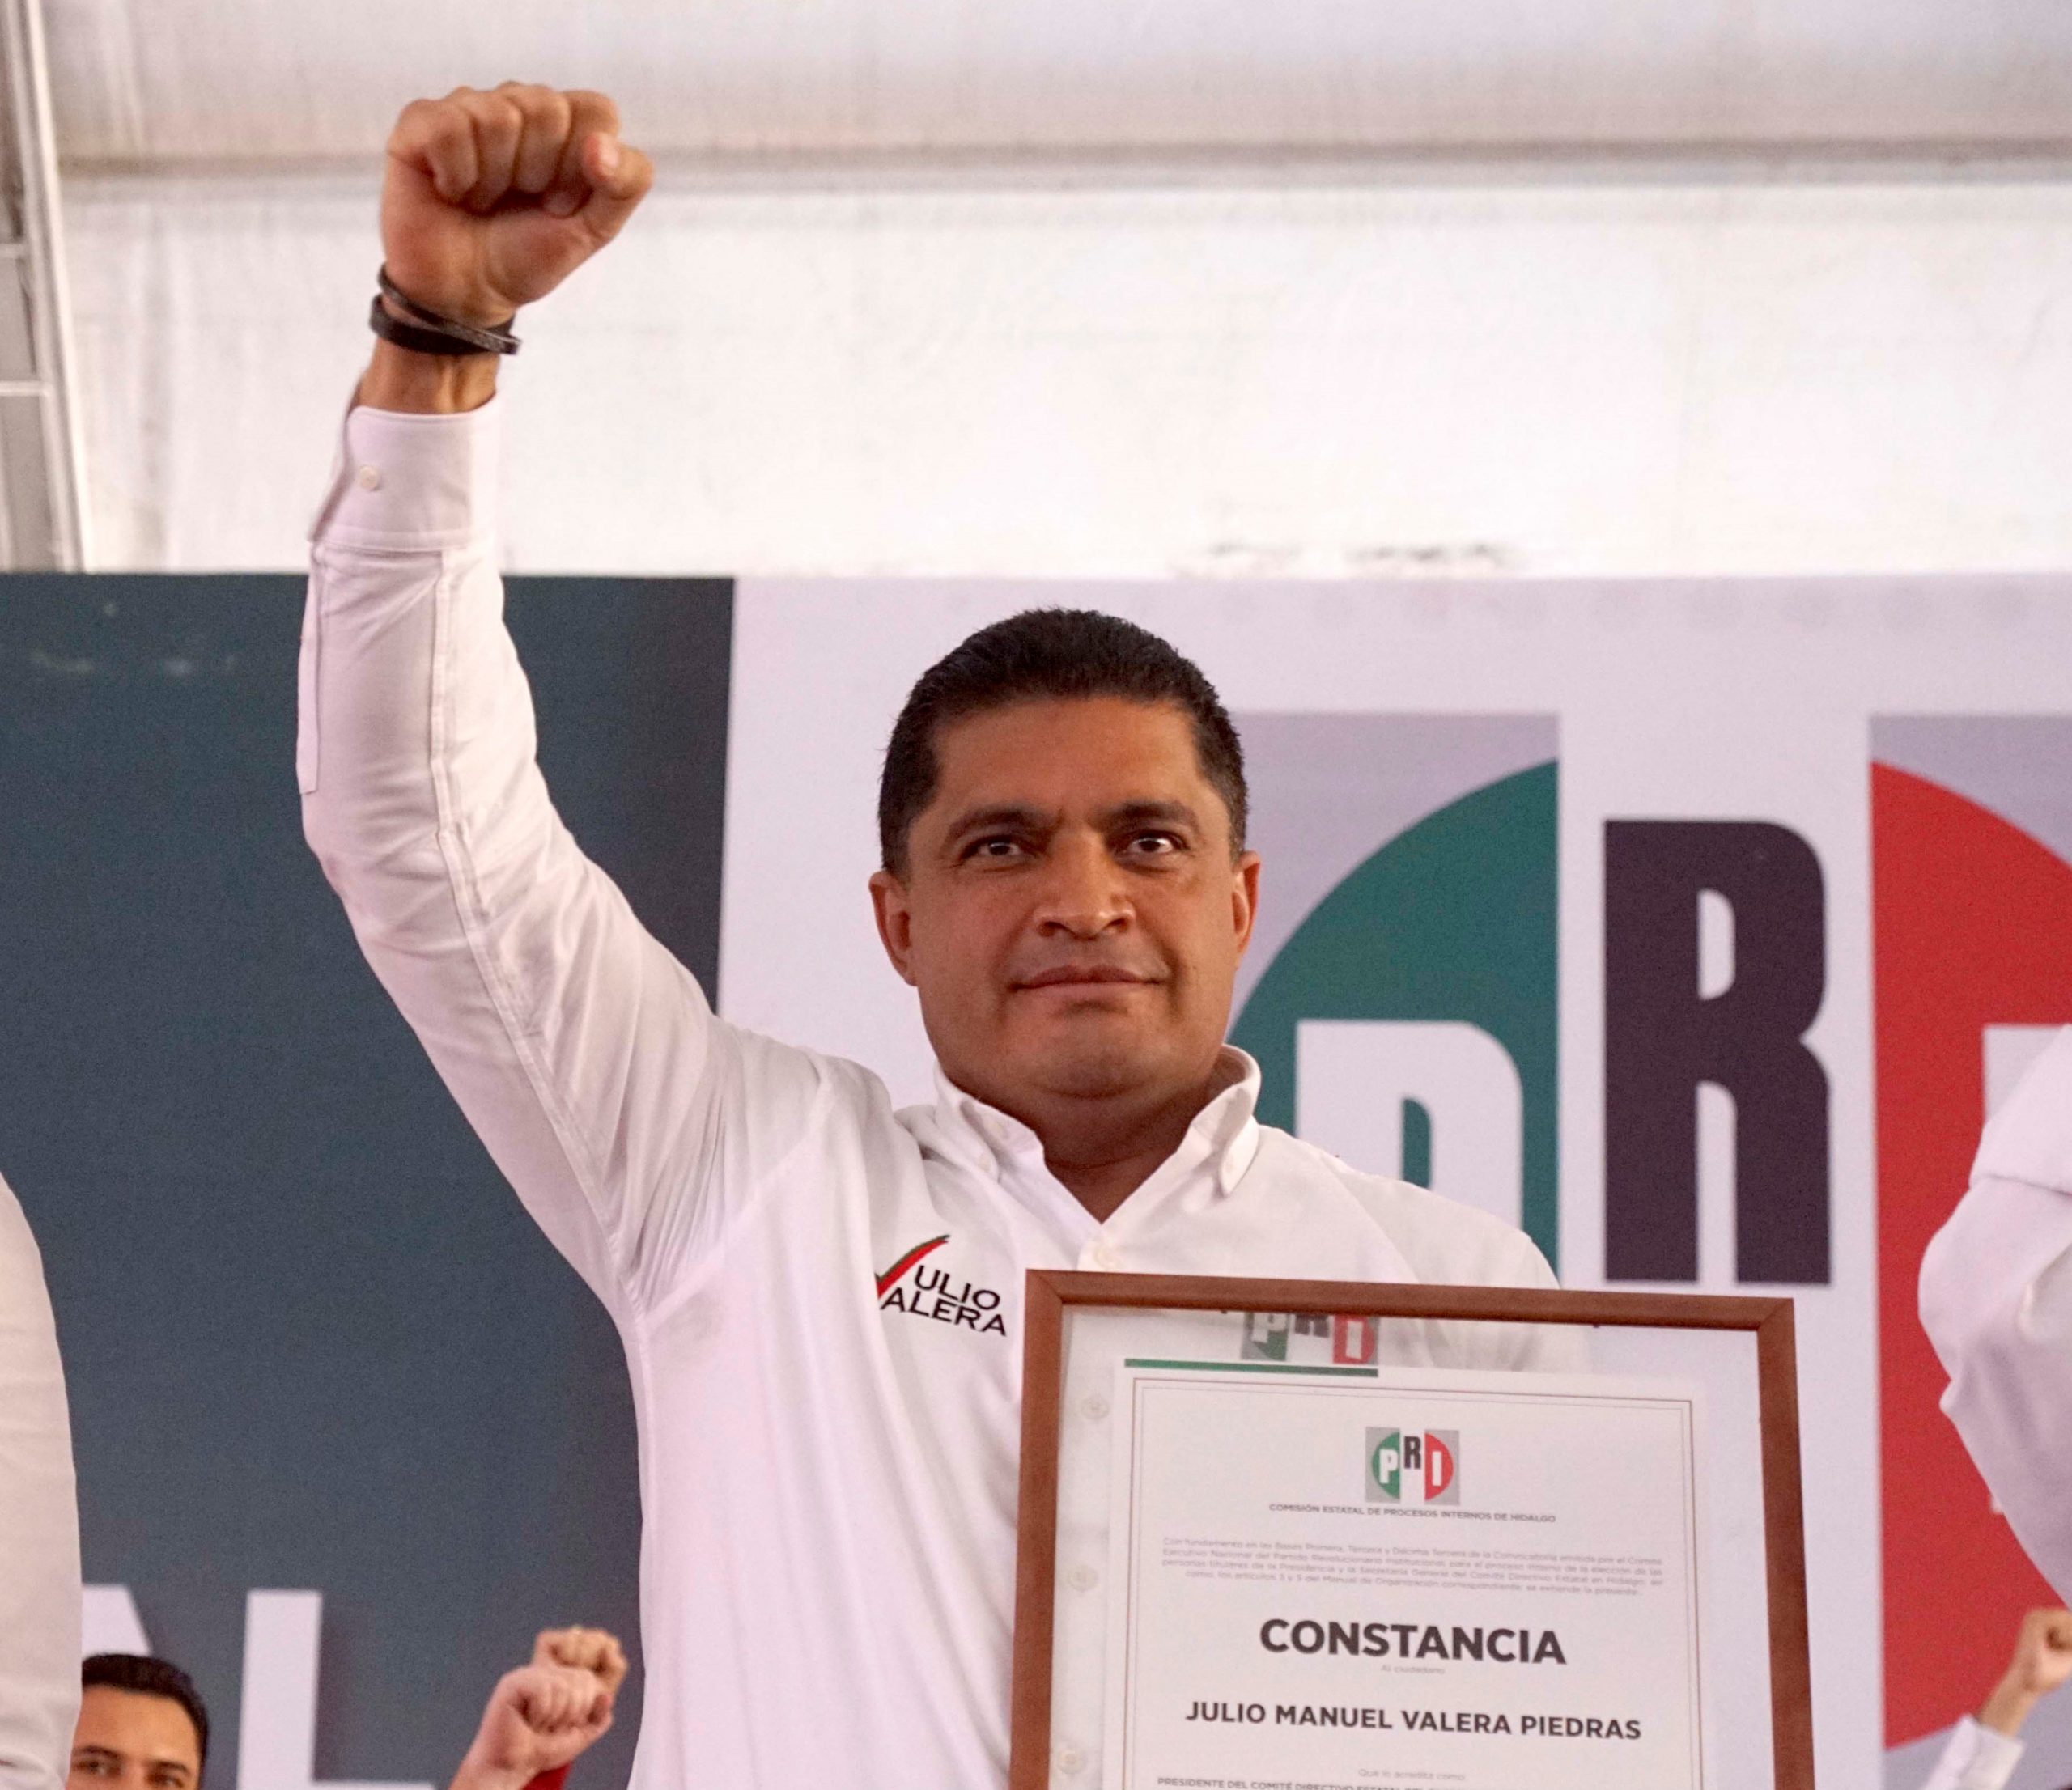 Julio Valera Piedras podría ser un buen candidato del PRI a la gubernatura.